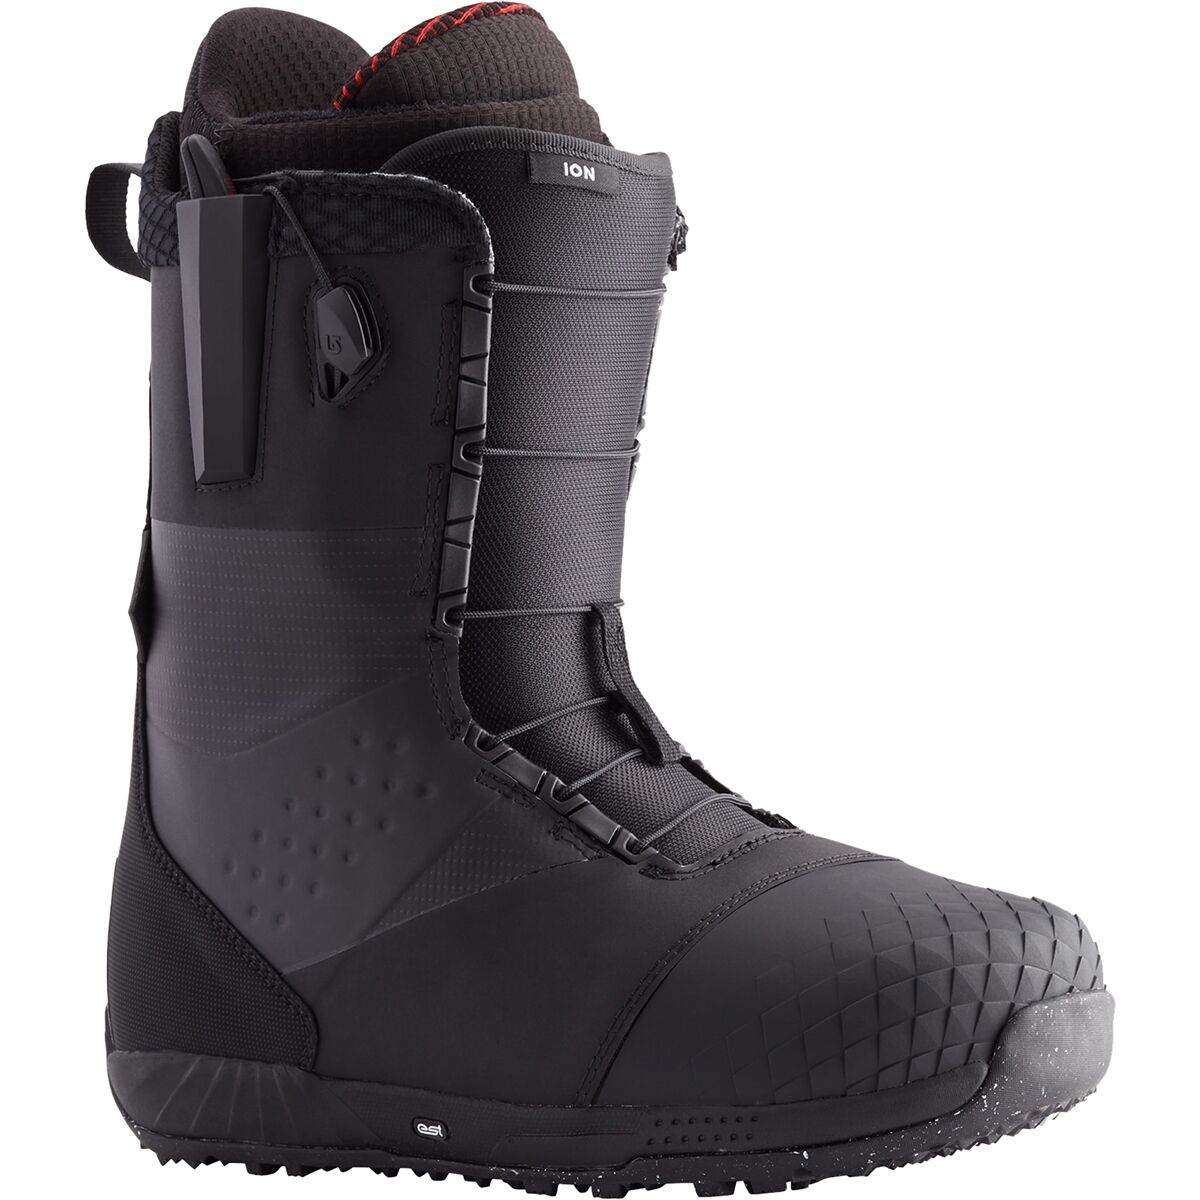 stiffest snowboard boots: Burton Ion Leather